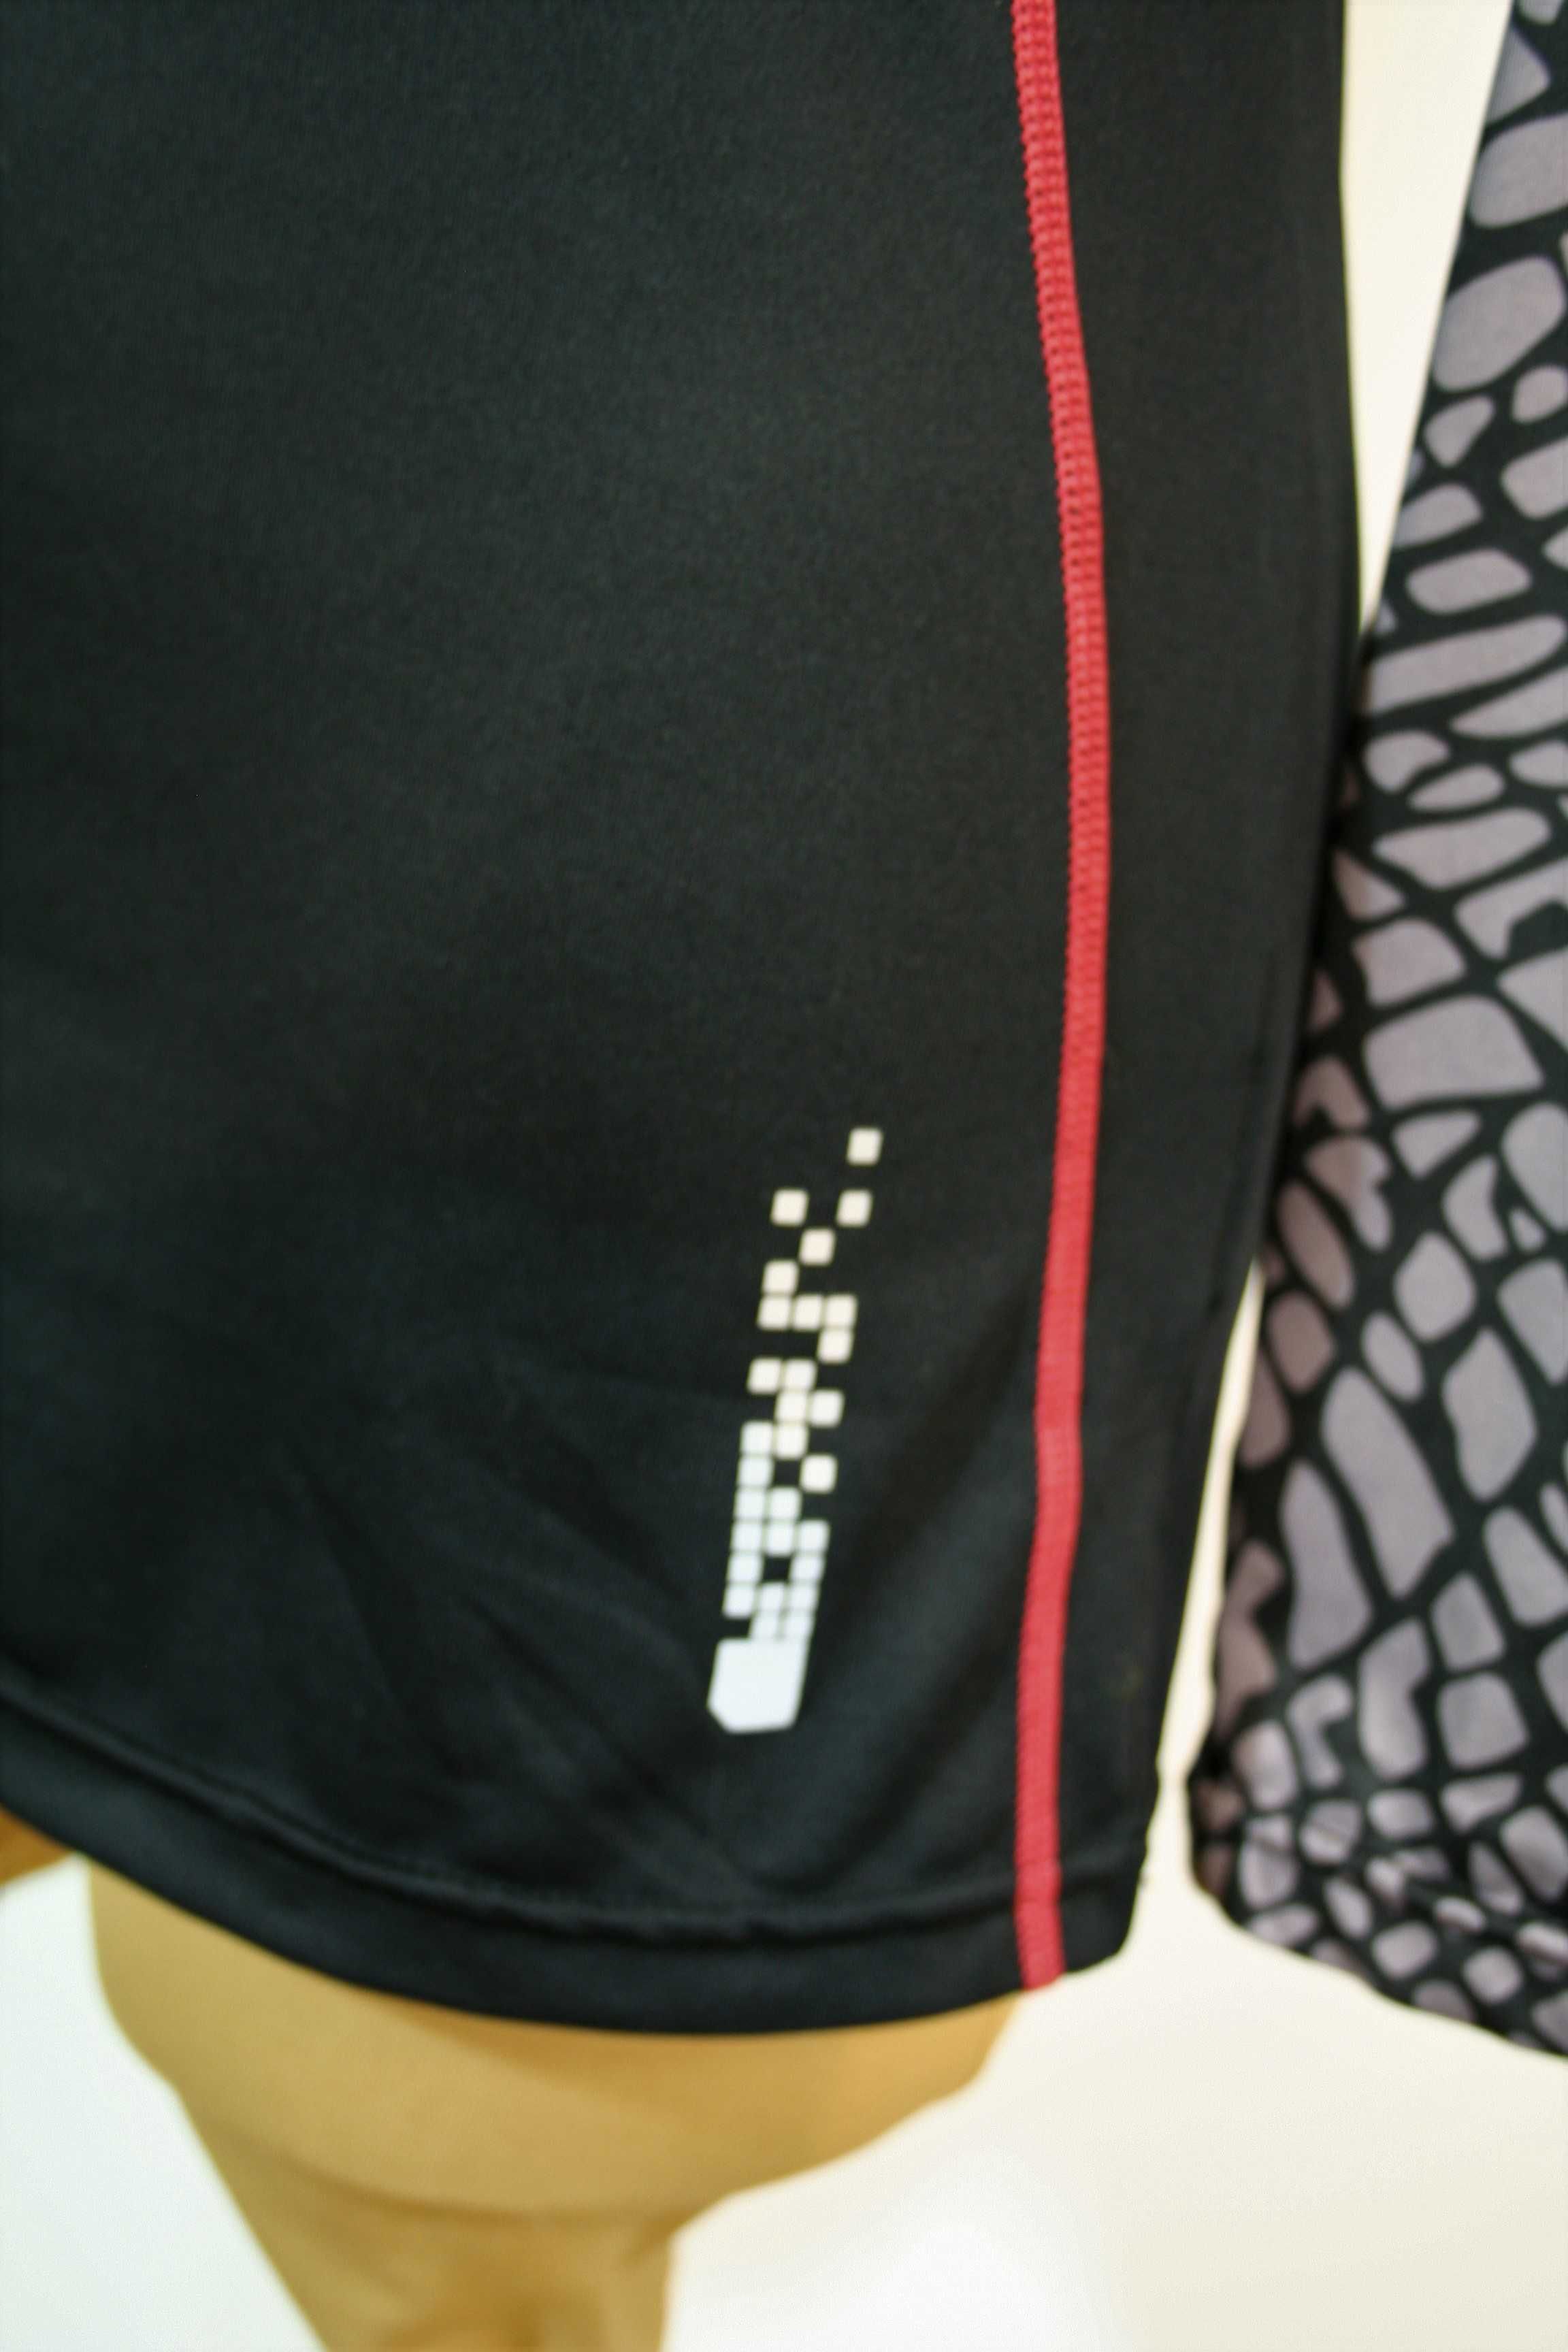 Bluzka Active Woman Top Bluza Odzież sportowa Fitness Siłownia Rz: M